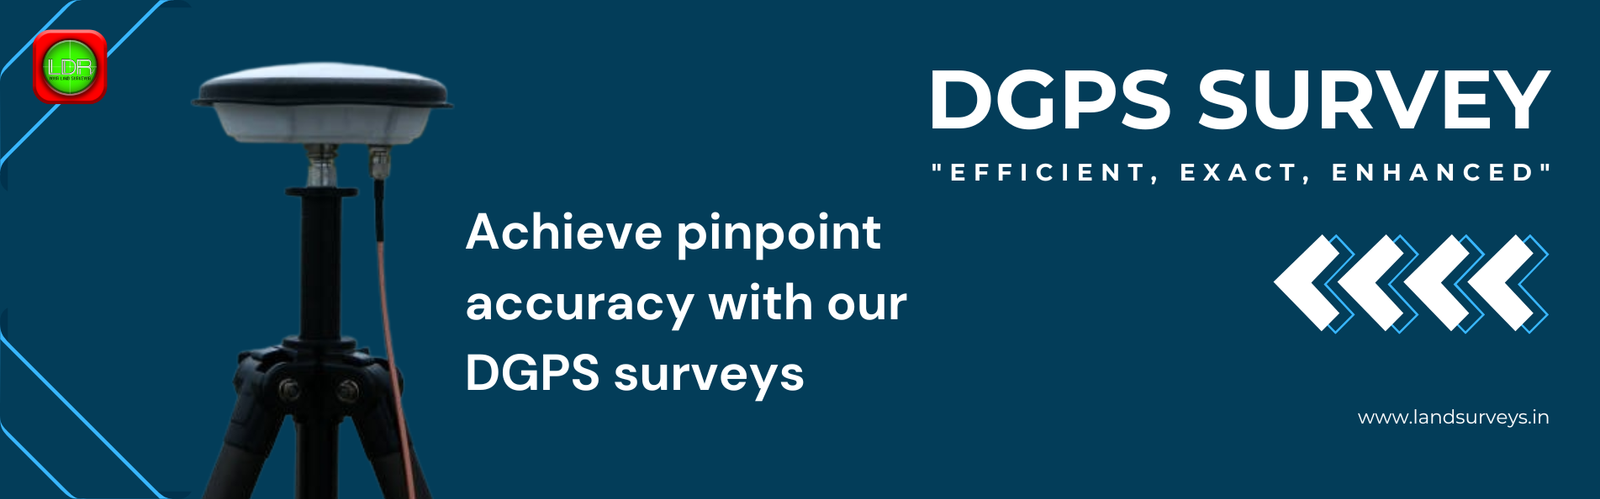 DGPS Survey